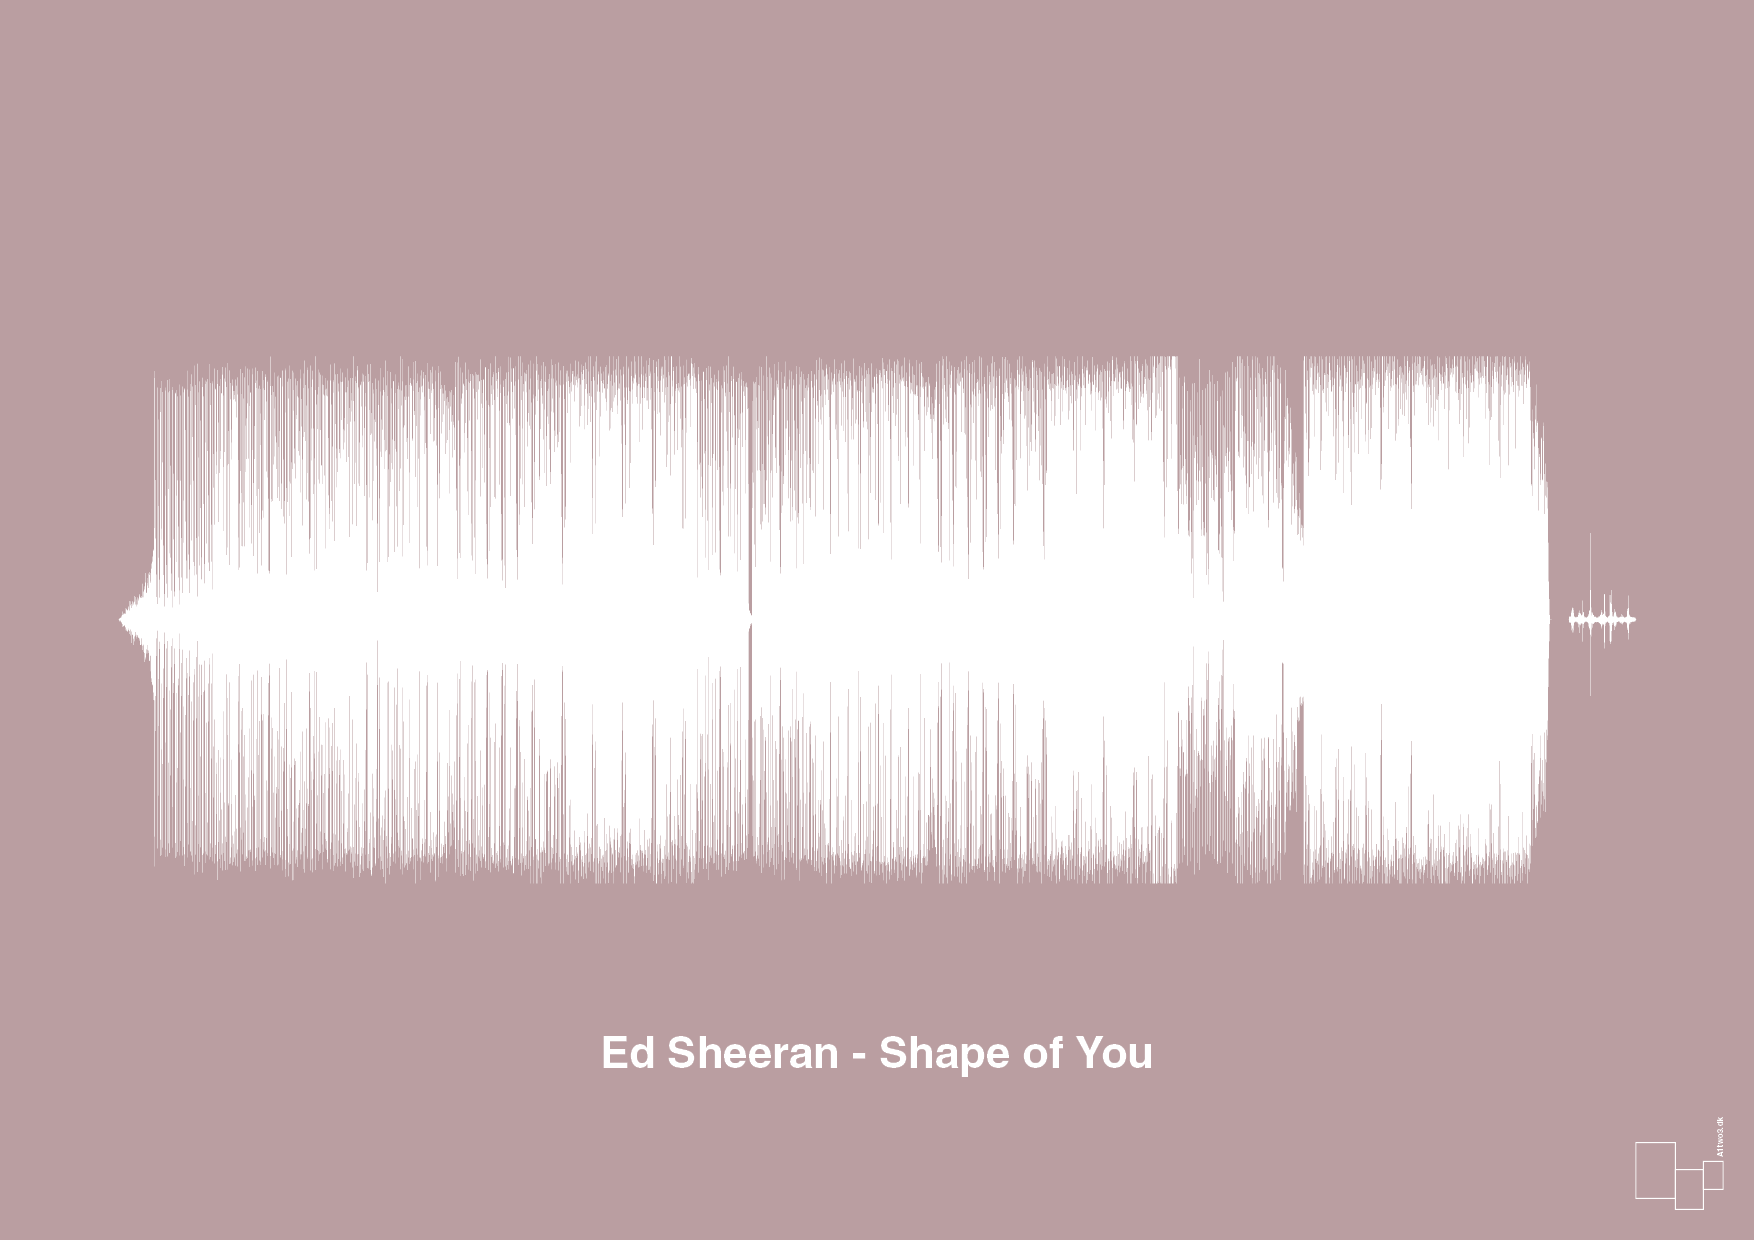 ed sheeran - shape of you - Plakat med Musik i Light Rose